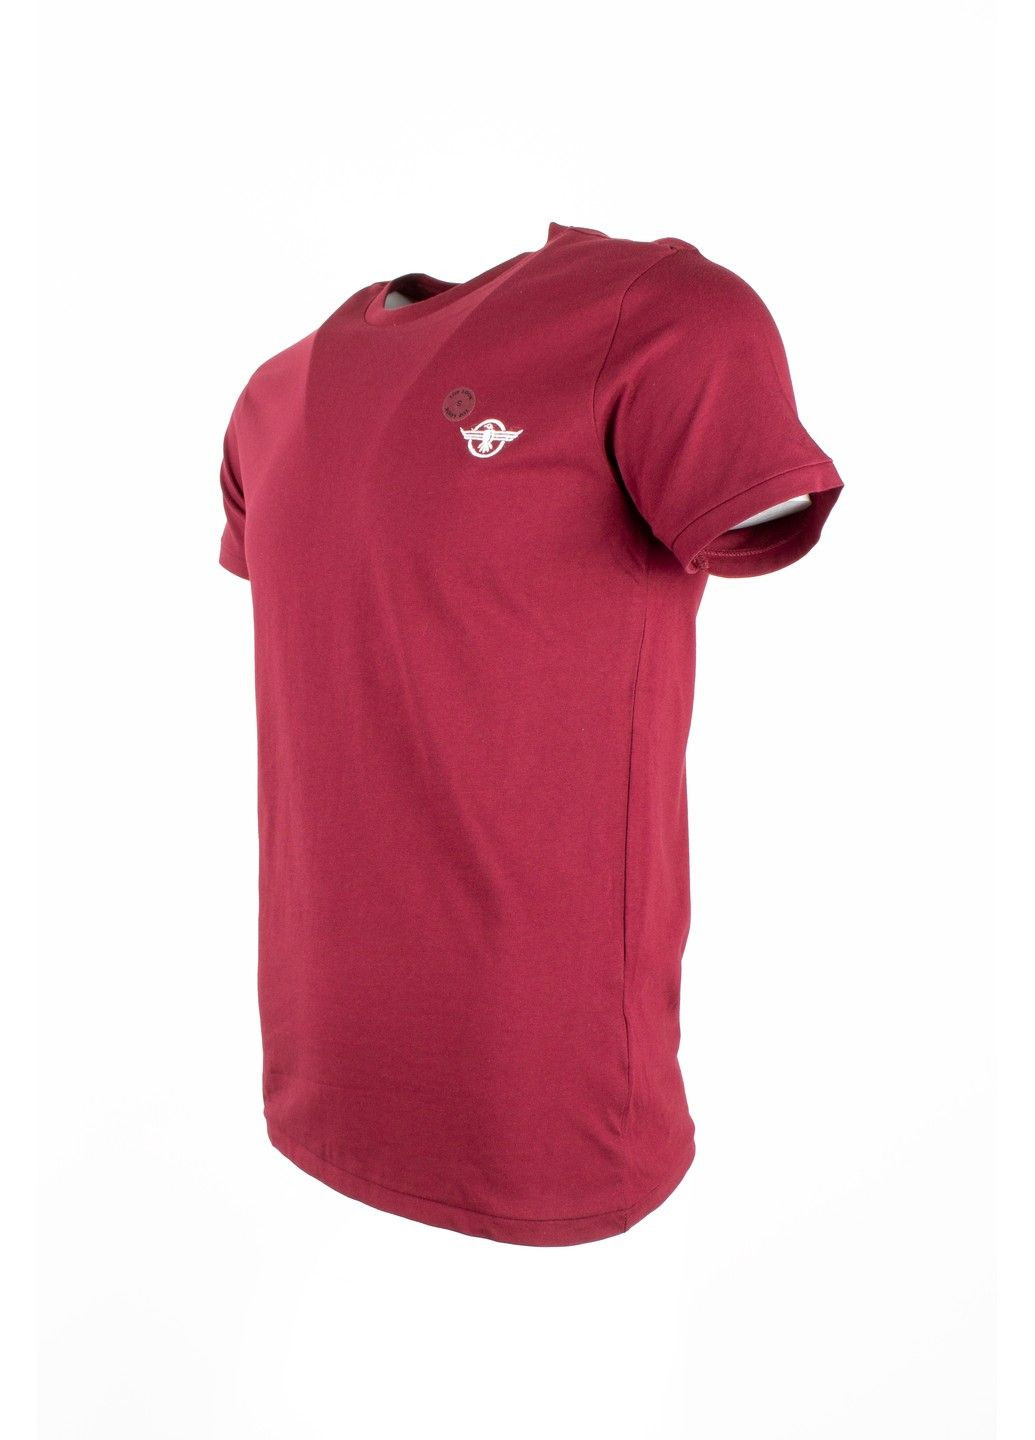 Бордовая футболка мужская top look бордовая 070821-001537 No Brand